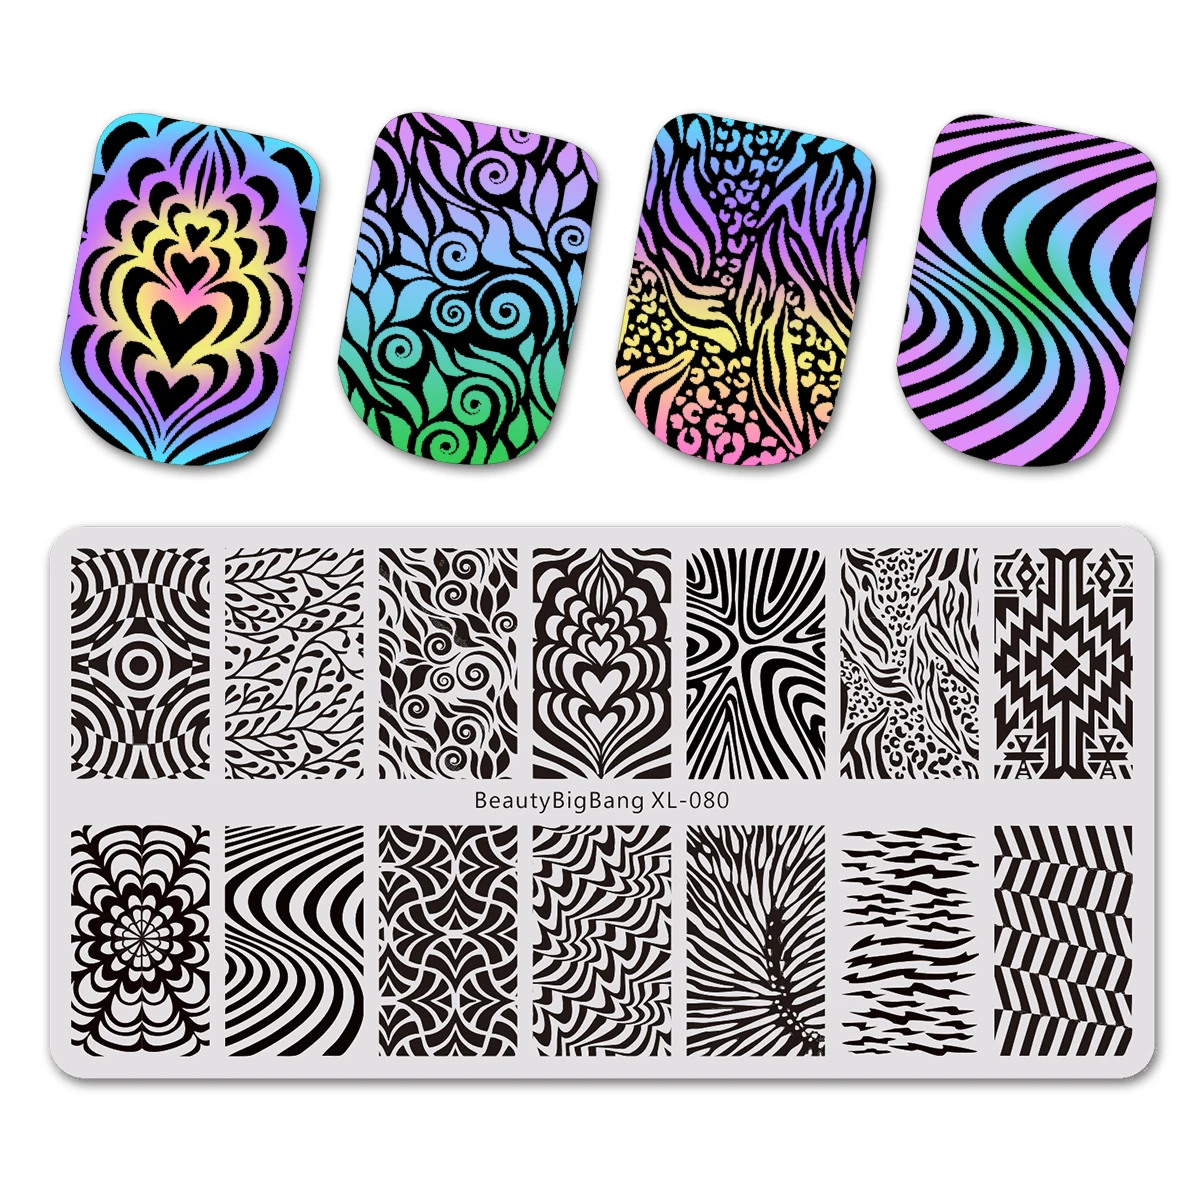 BeautyBigBang 1 шт. прямоугольные пластины для штамповки ногтей Летняя печать дизайн ногтей штамп шаблон изображения пластины трафареты BBB XL-013 - Цвет: 14